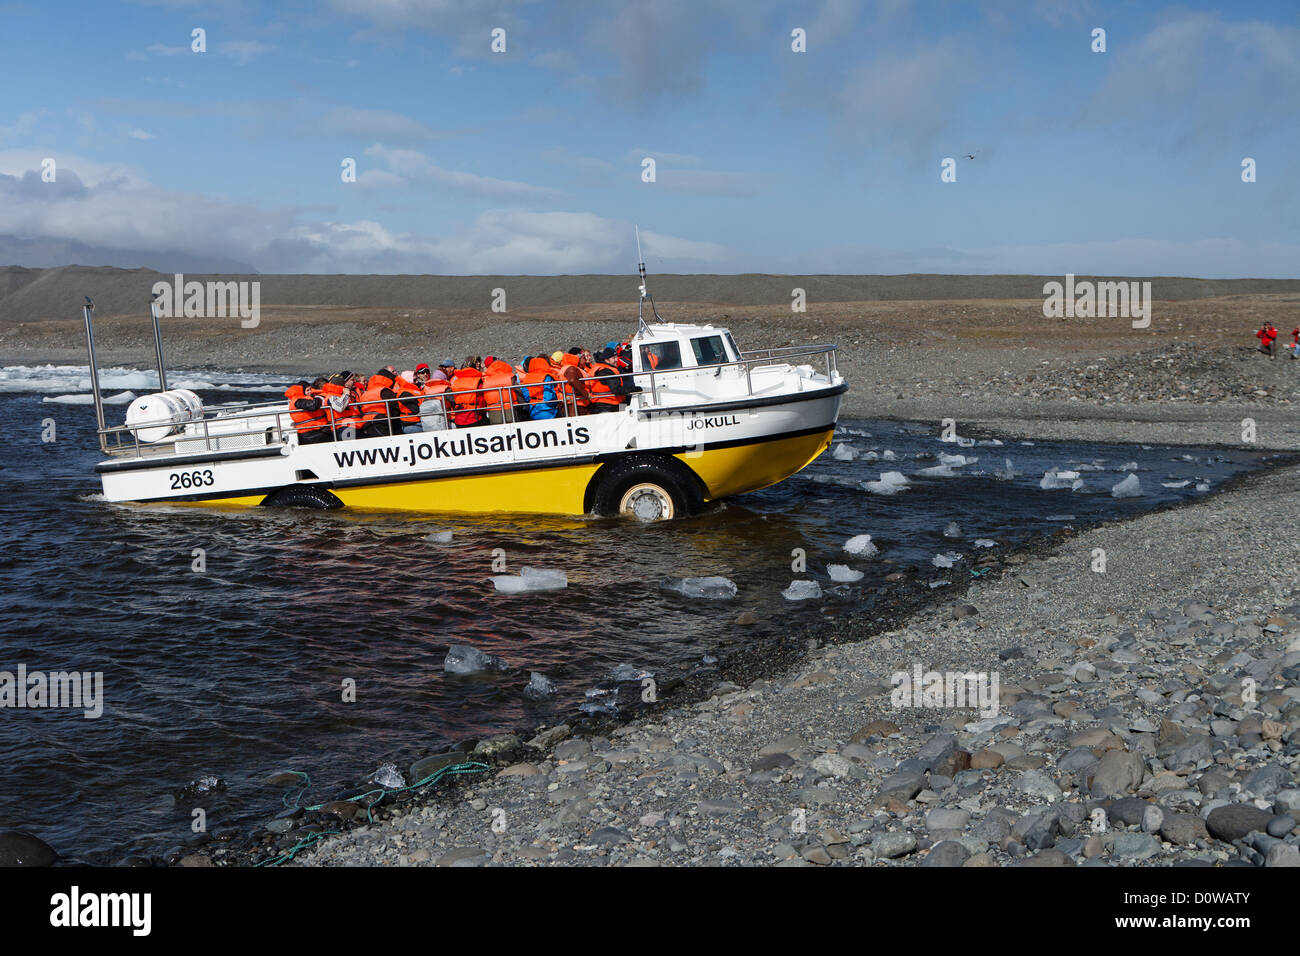 Bateau amphibie pour visiter le lac Jokulsarlon laisser de l'eau, de l'Islande Banque D'Images